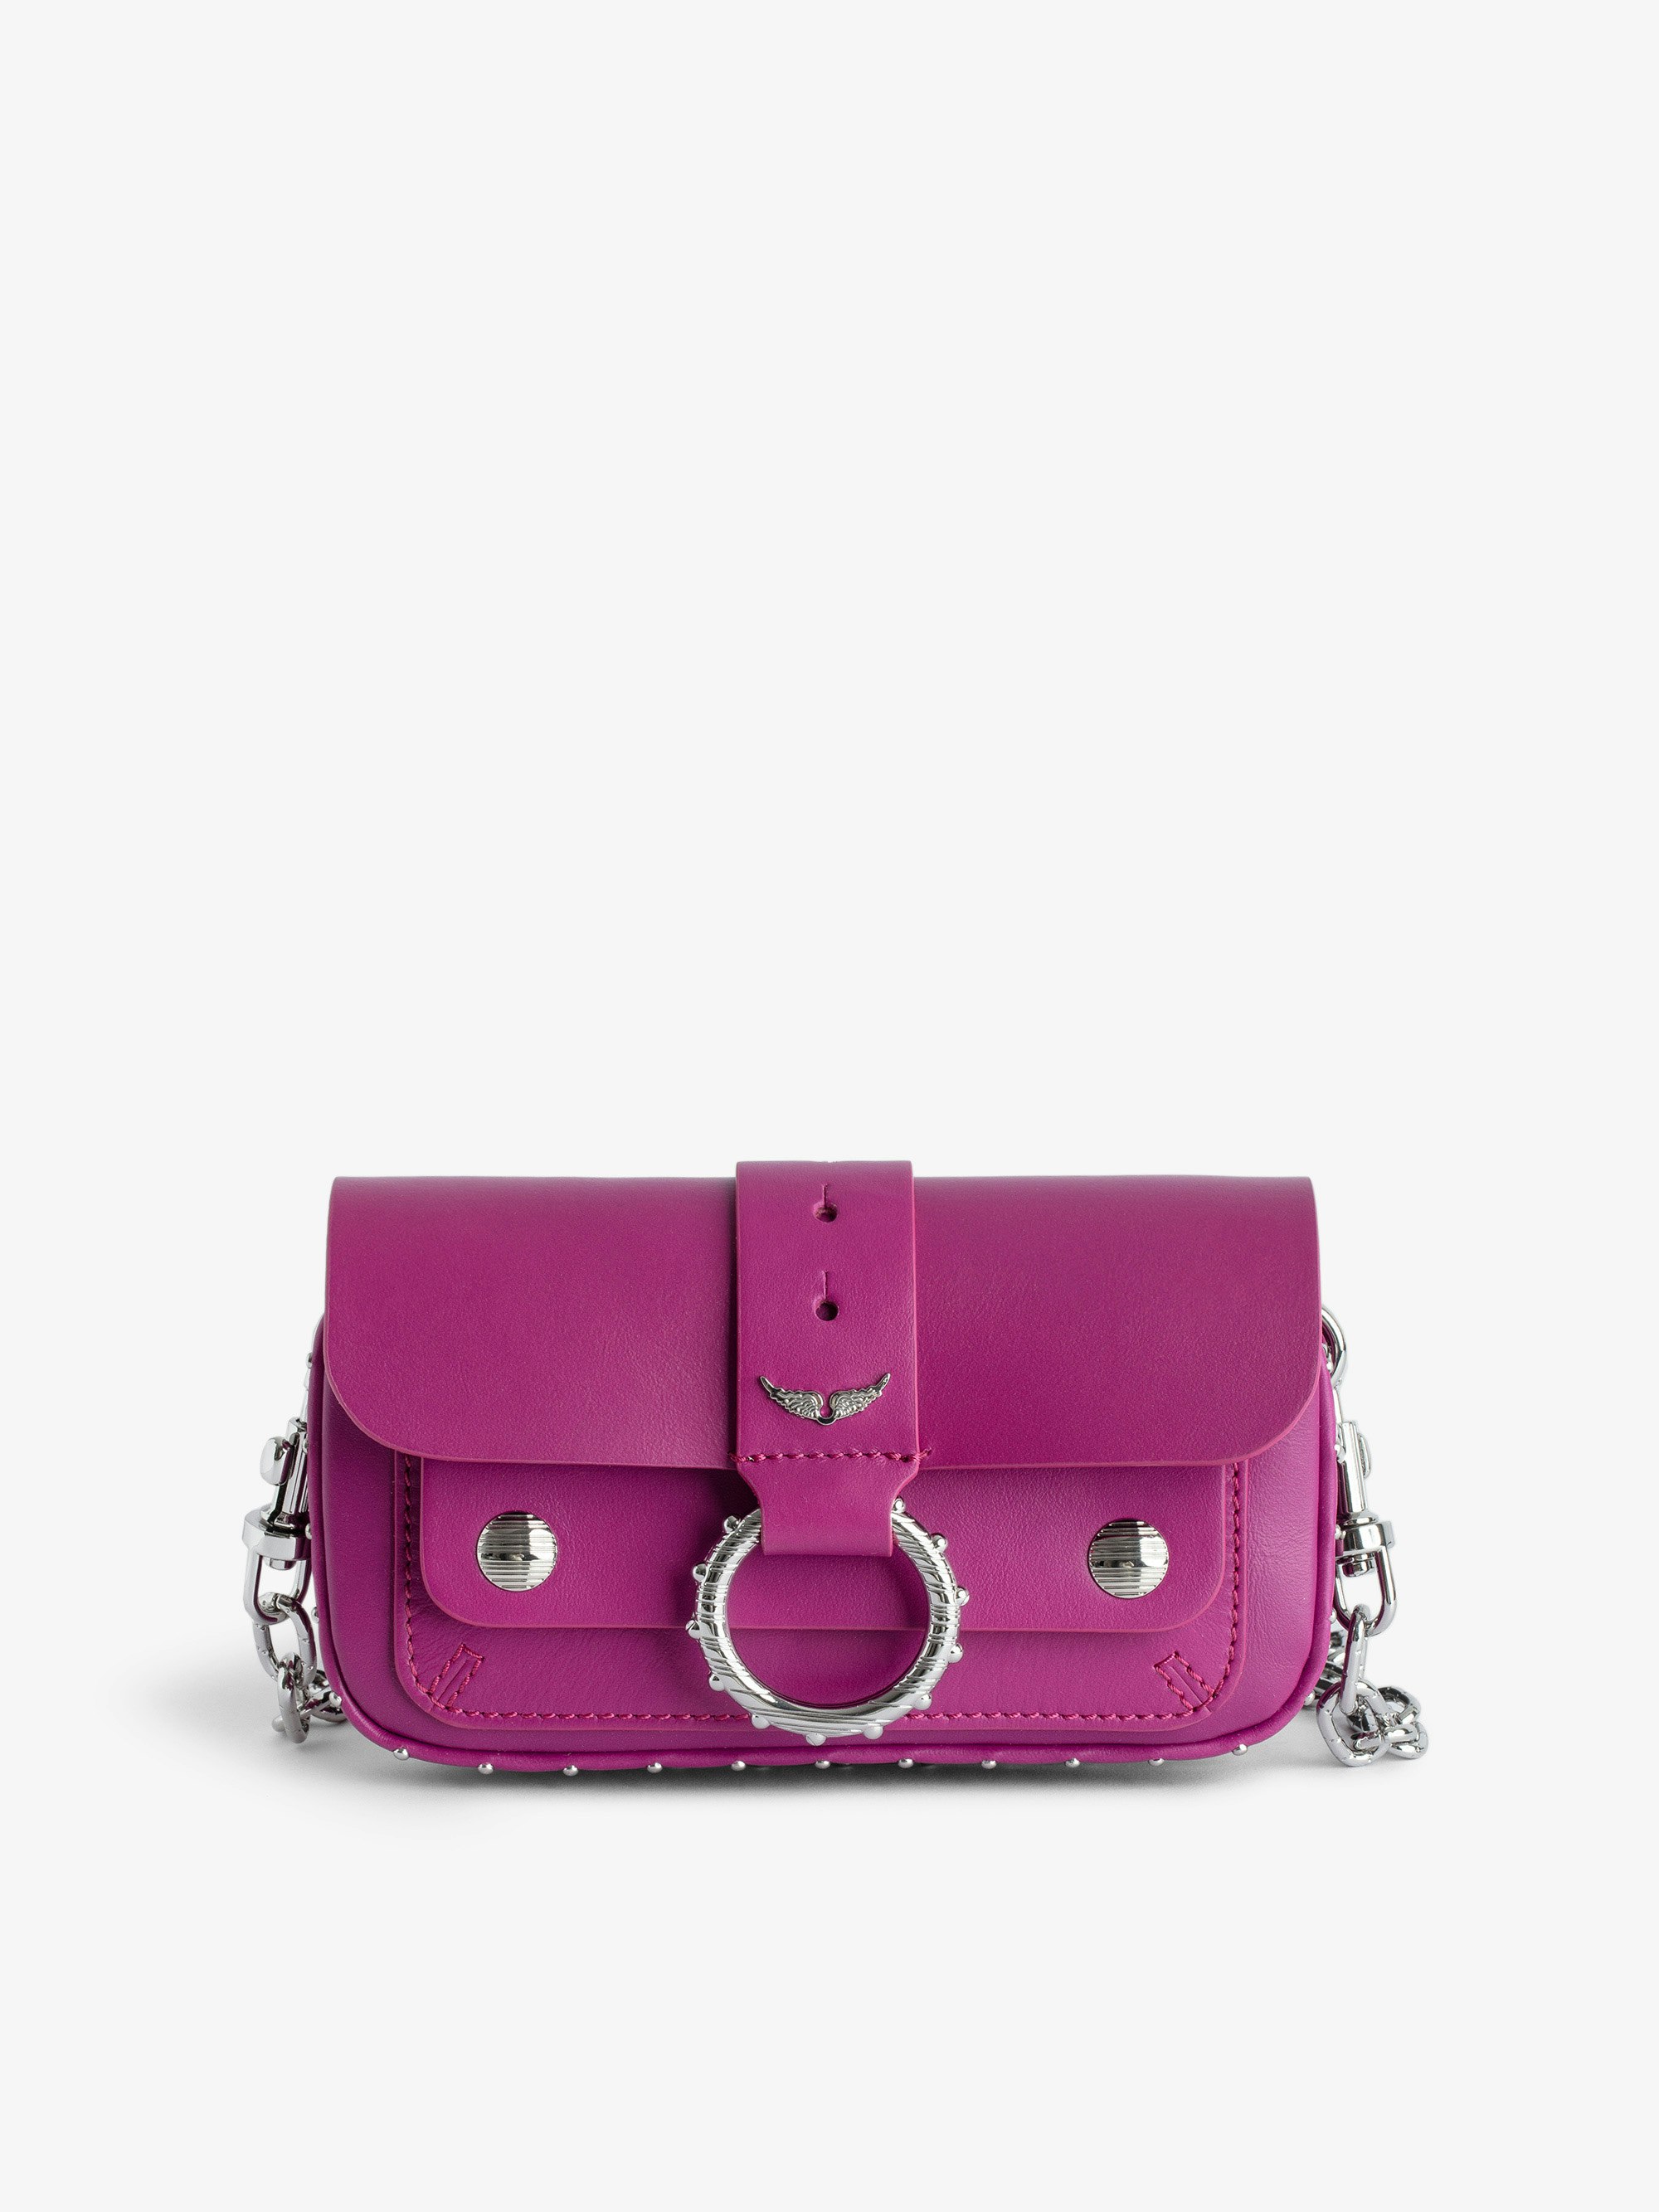 Sac Kate Wallet - Designed by Kate Moss for Zadig&Voltaire.  Mini sac en cuir lisse fuchsia à anneau et chaîne en métal.